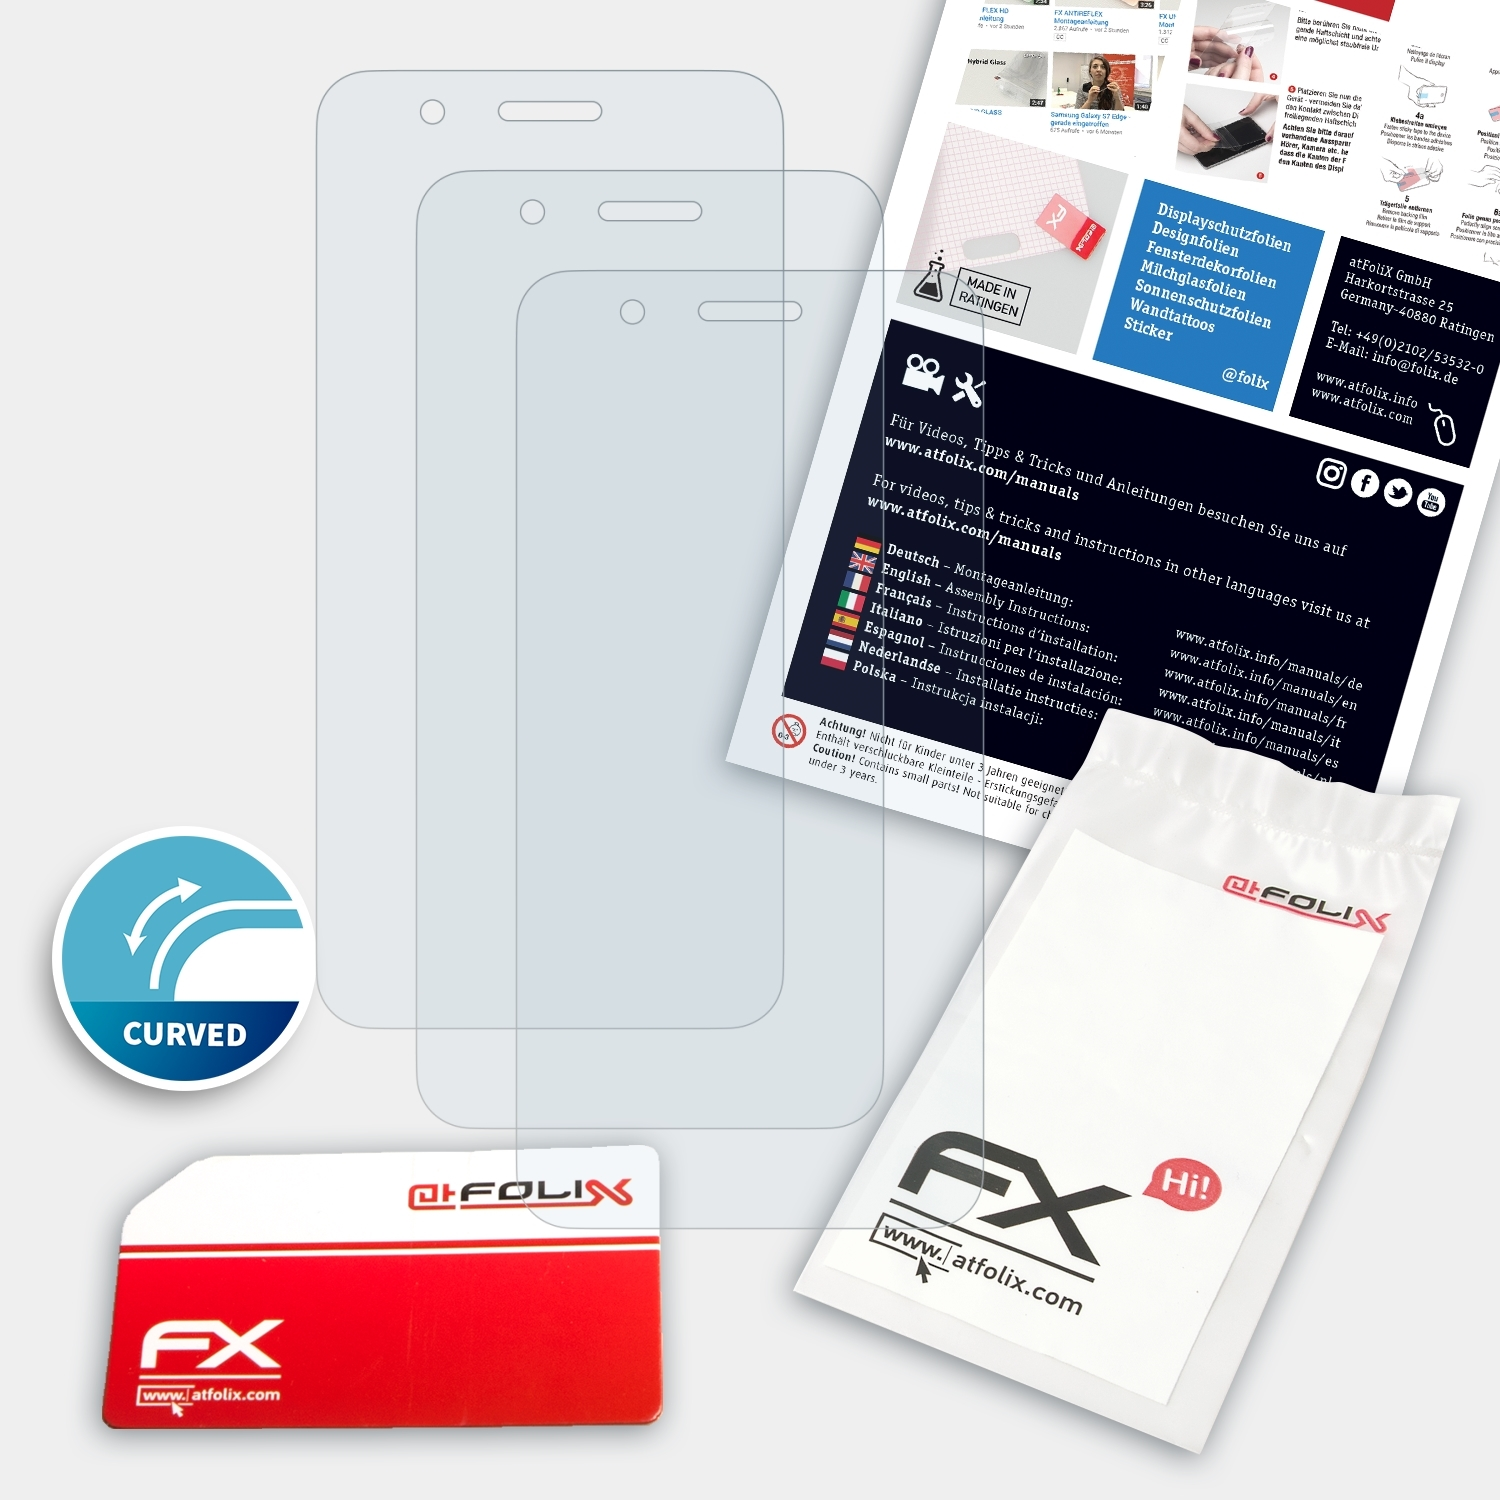 FX-ActiFleX 3x ATFOLIX Displayschutz(für X10) One HTC